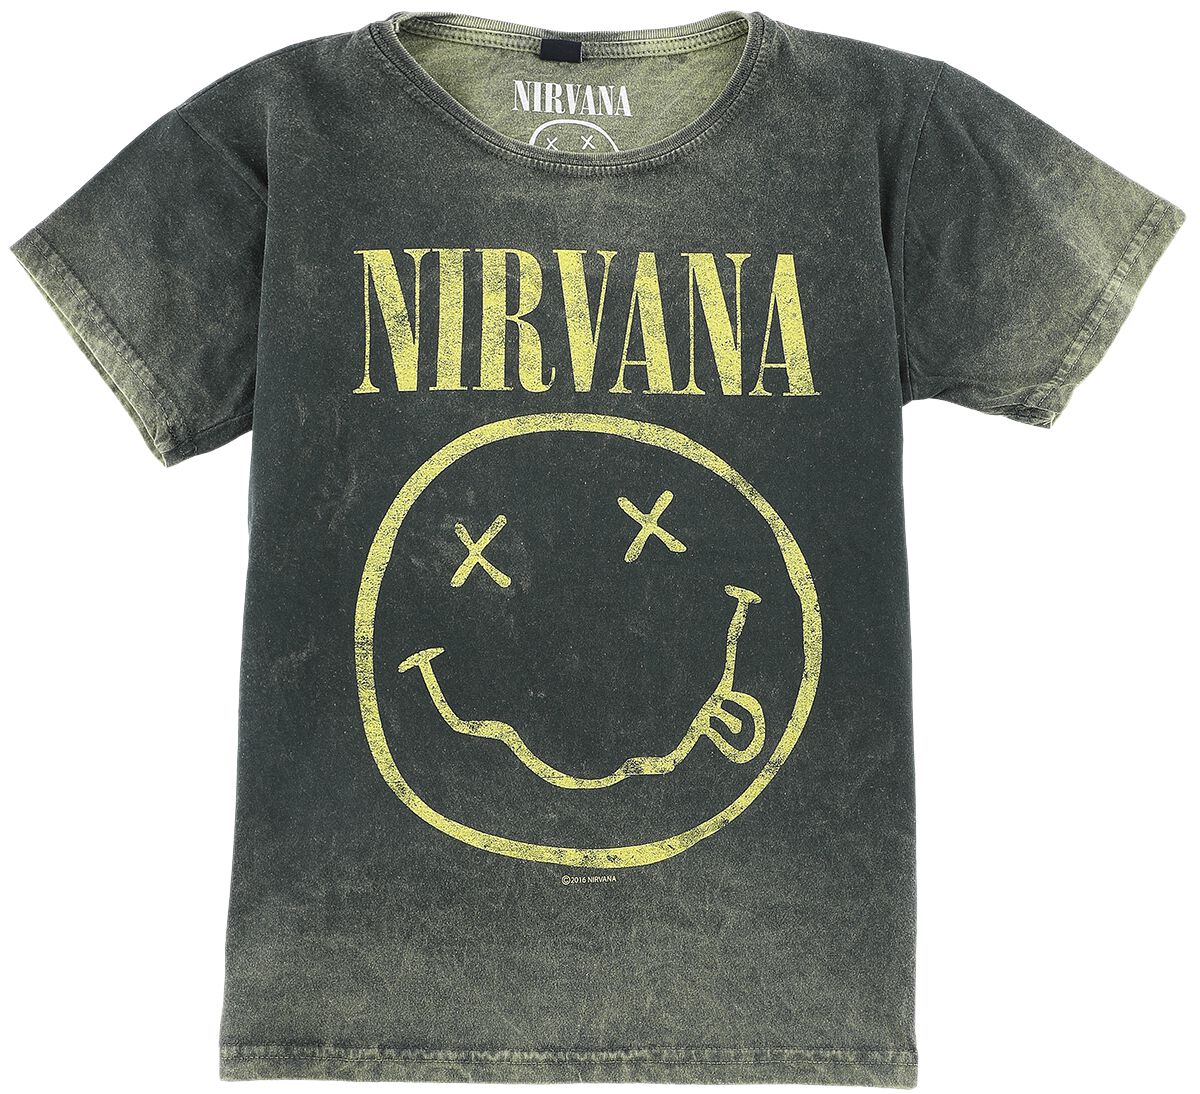 Nirvana T-Shirt für Kinder - Kids - Smiley - für Mädchen & Jungen - grün  - Lizenziertes Merchandise!